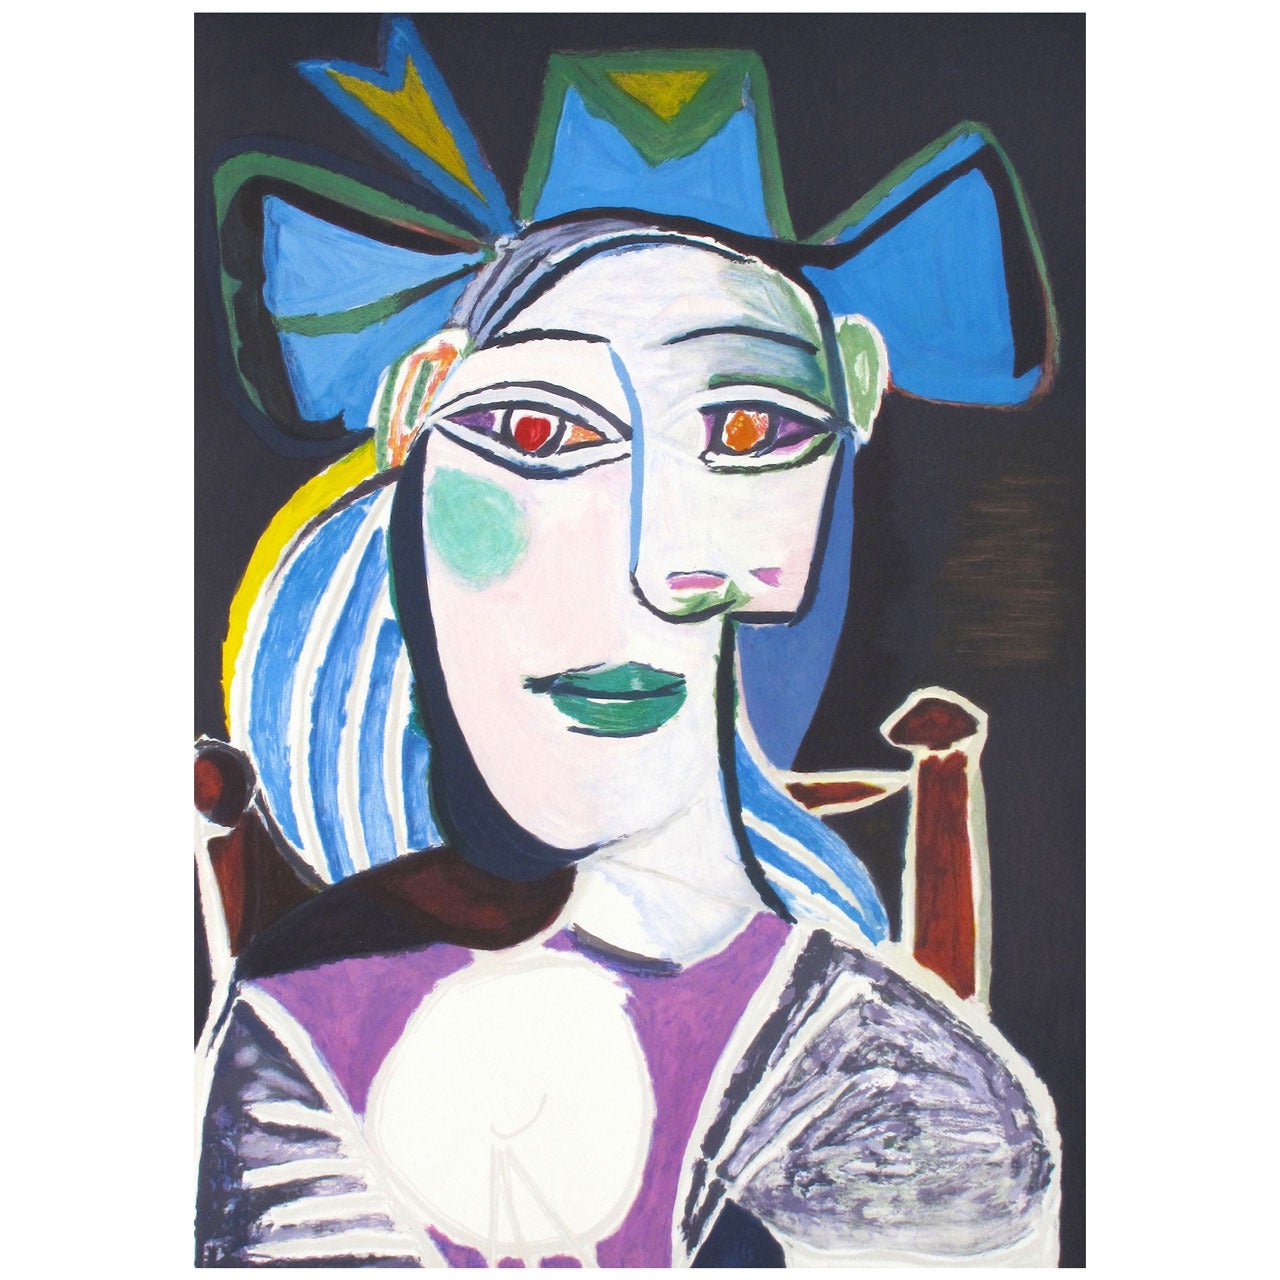 Pablo Picasso "Buste De Femme Au Chapeau Bleu" lithograph